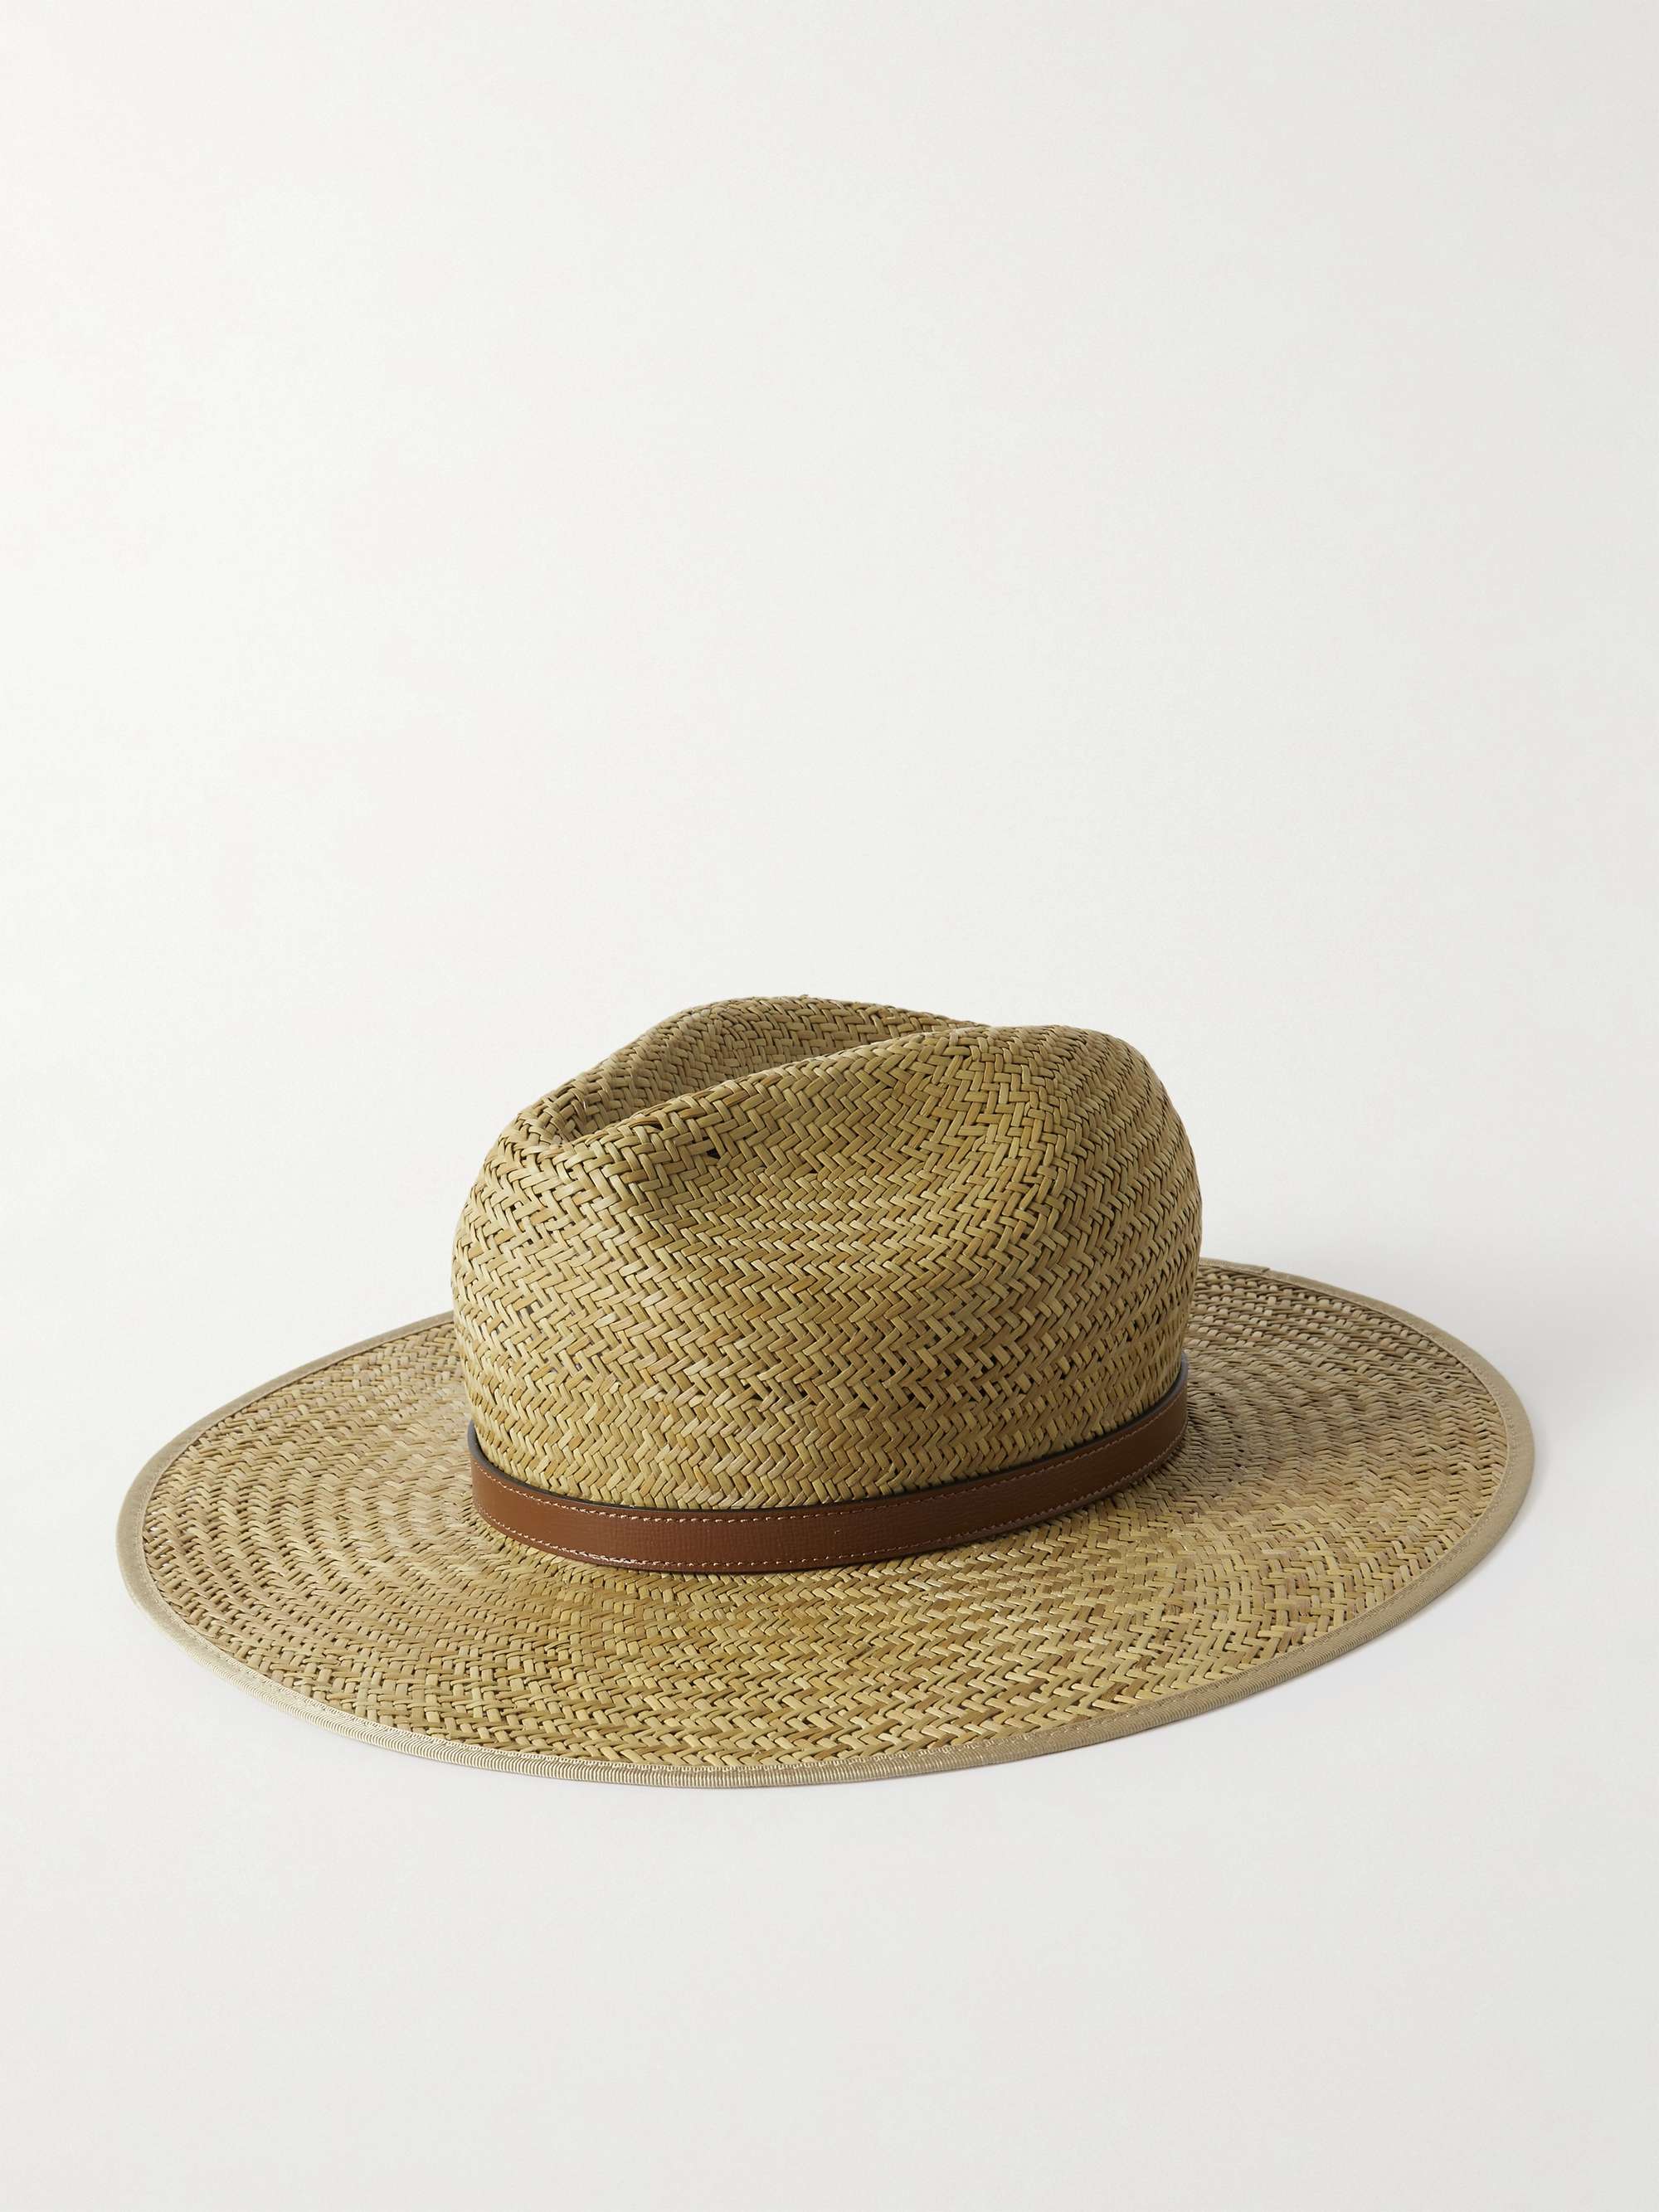 بني قبعة فيدورا Little Mors من القشّ بحواف من الجلد مع حلية هورسبيت | GUCCI  | MR PORTER